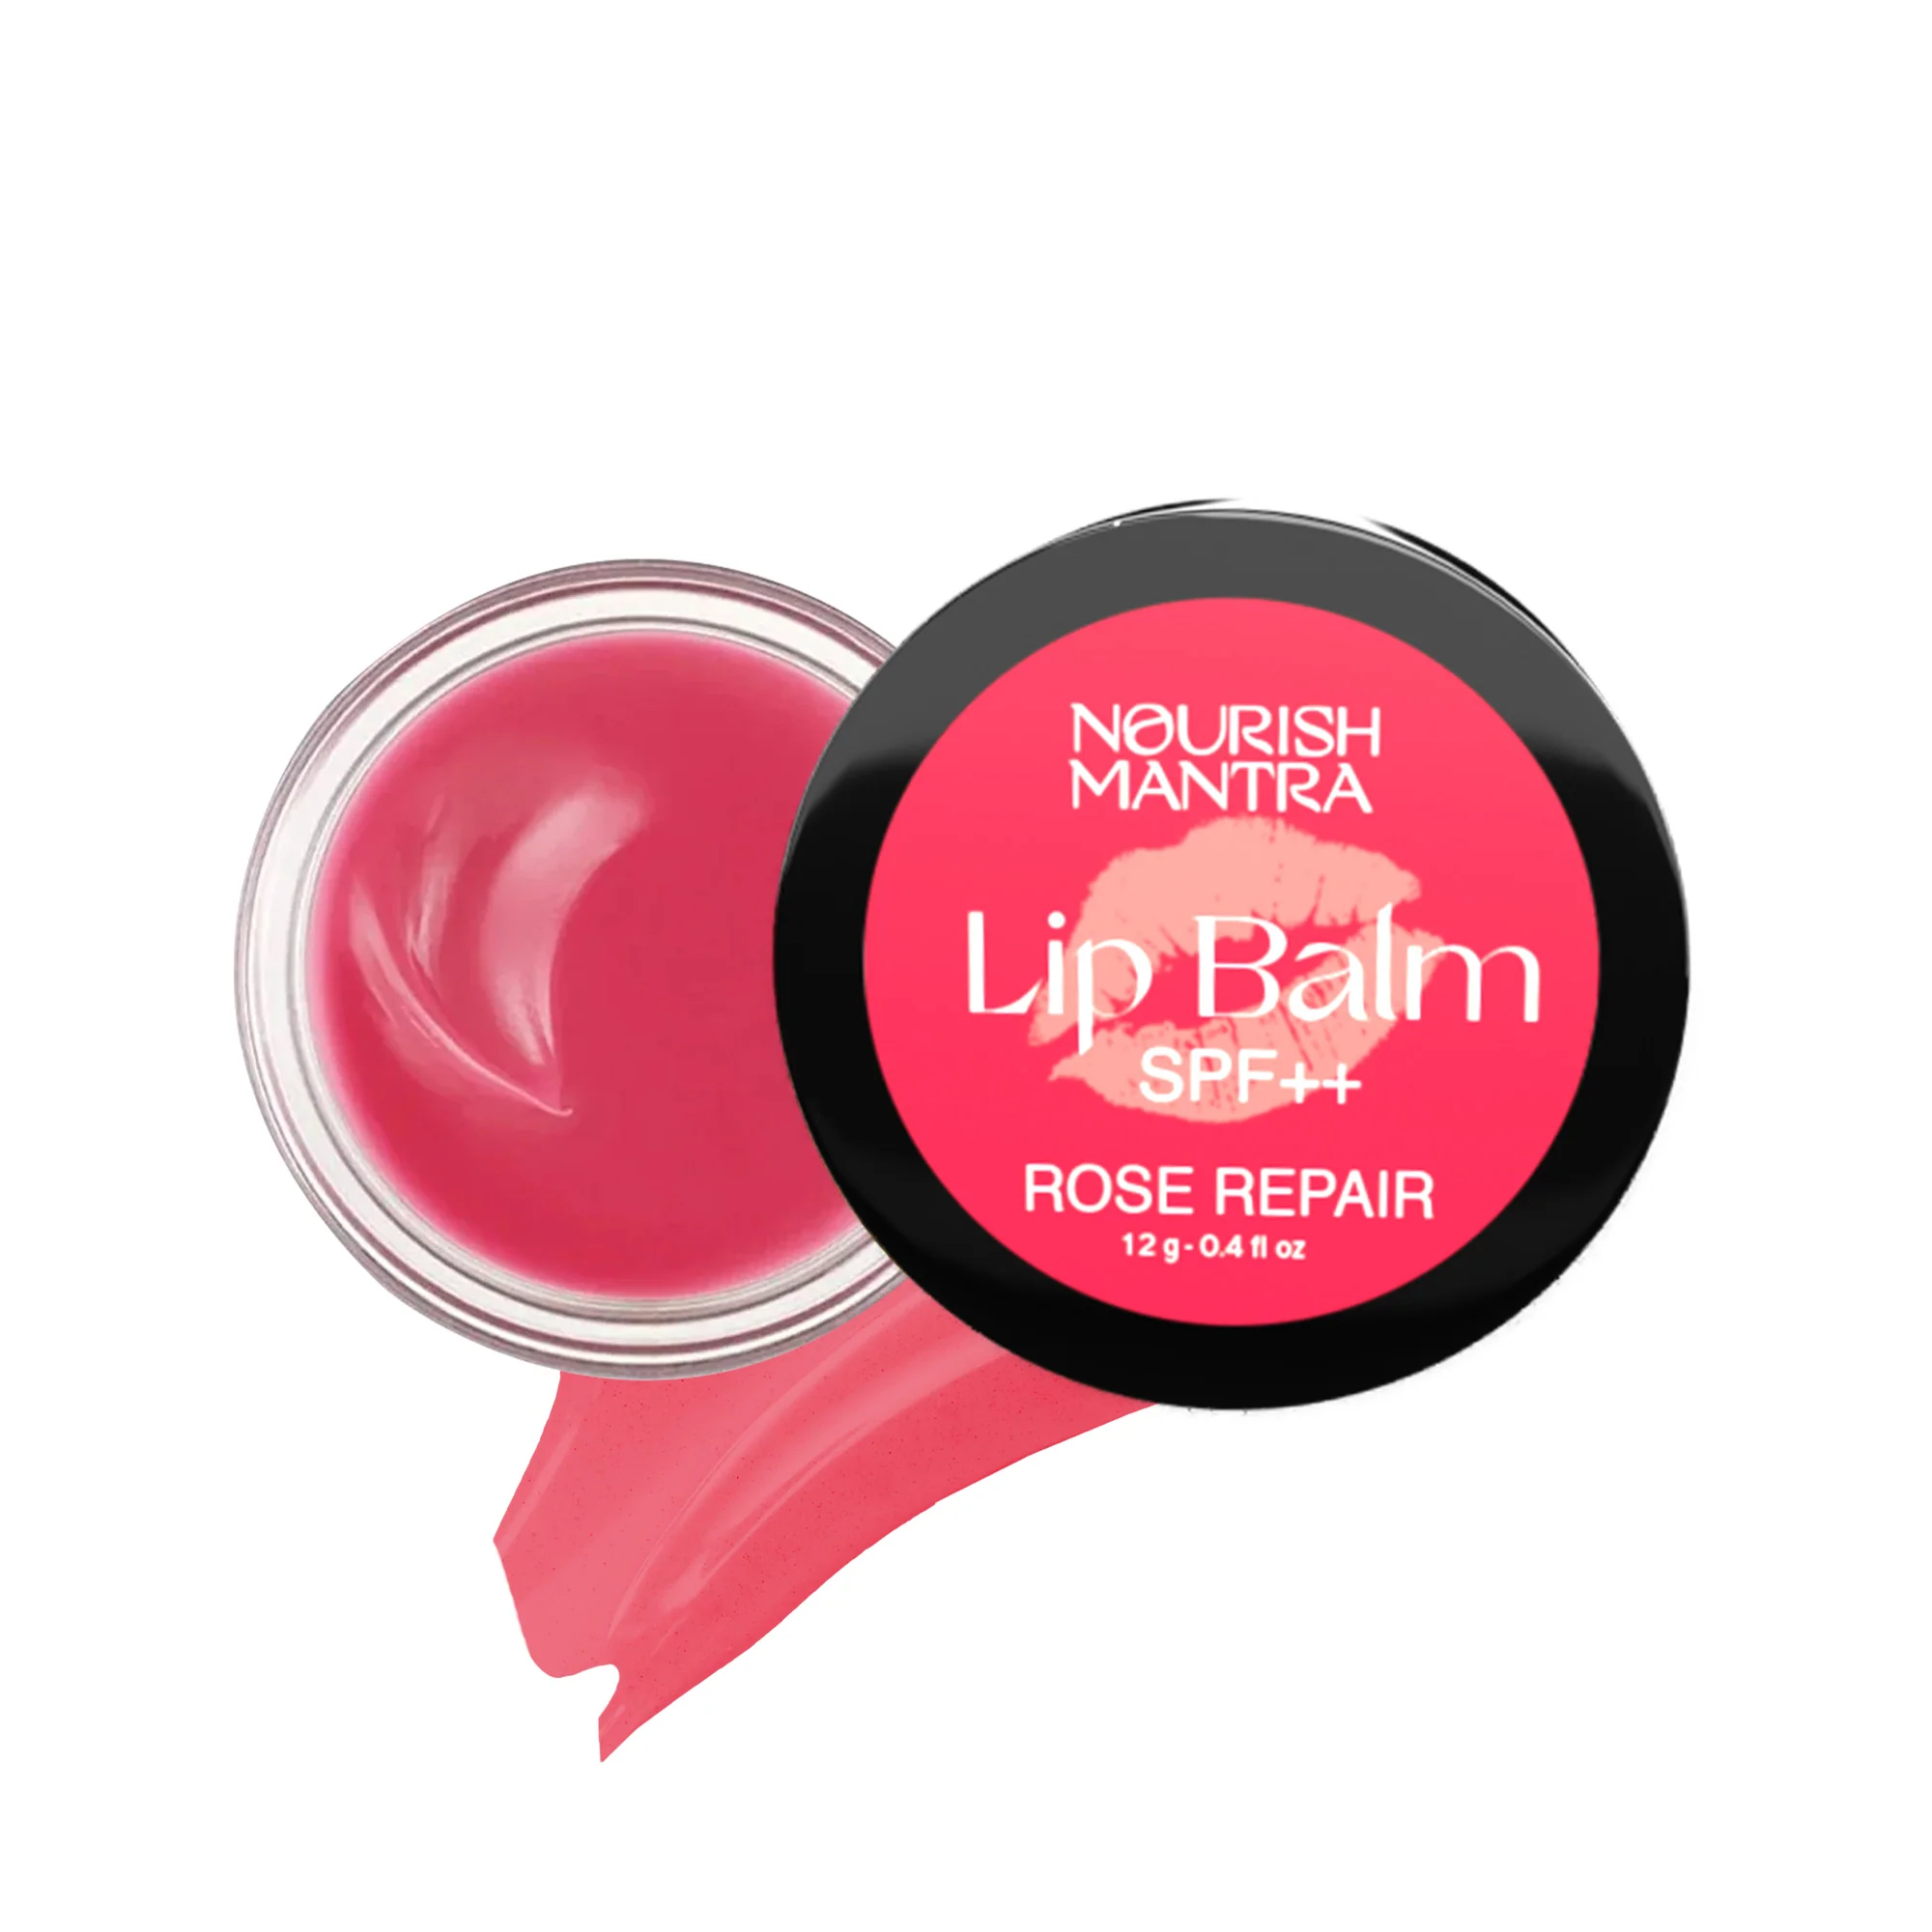 Rose Repair Lip Balm